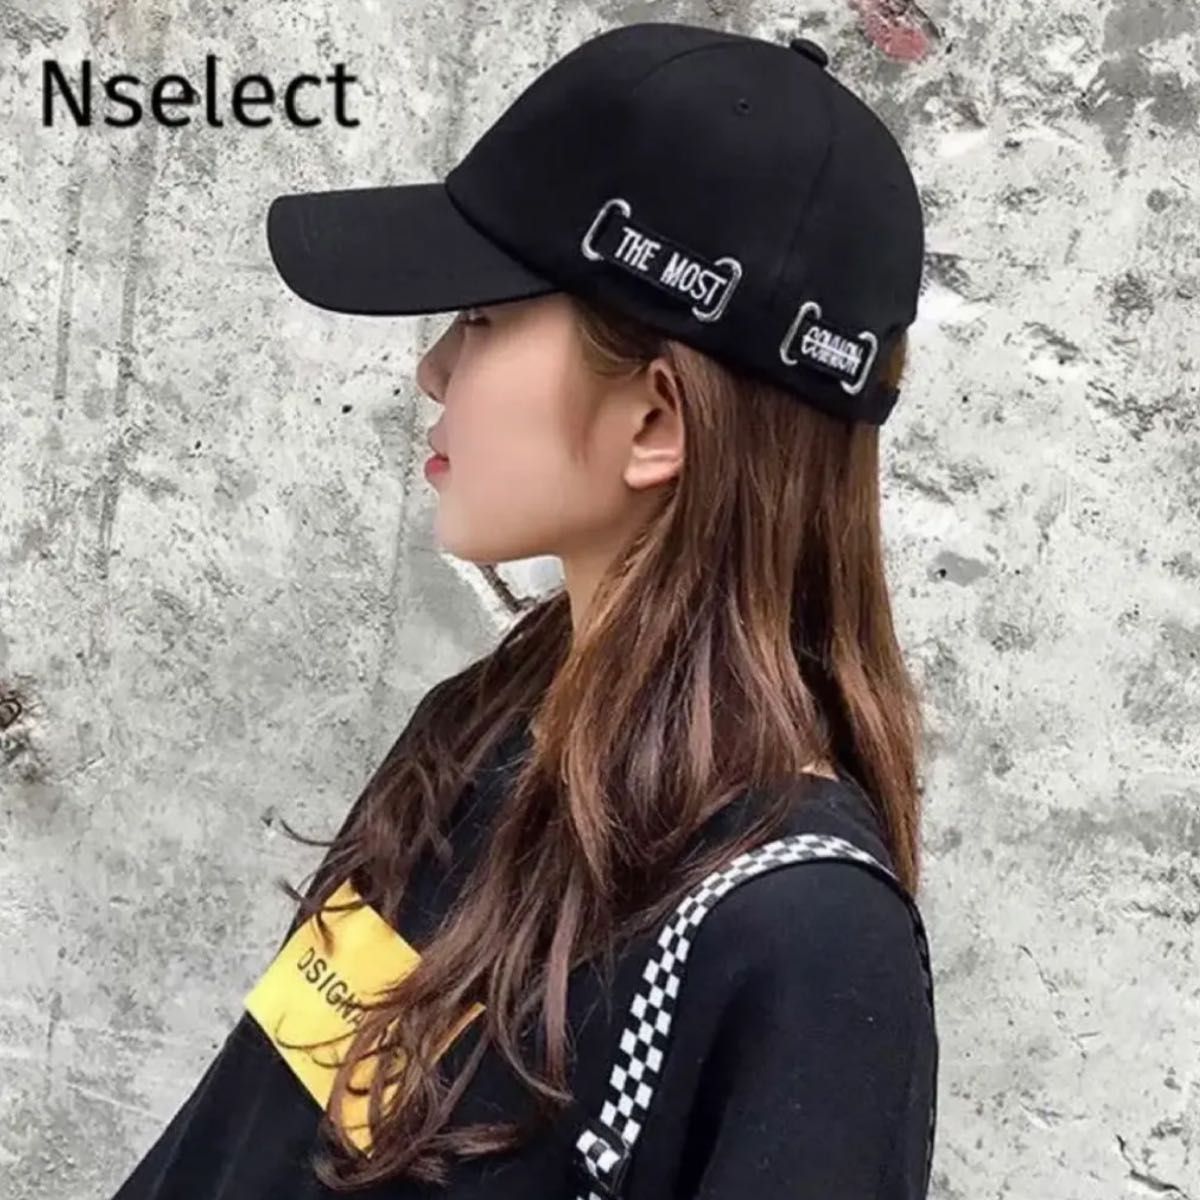 キャップ ストリート 野球帽 ユニセックス ブラック 韓国 帽子 通販